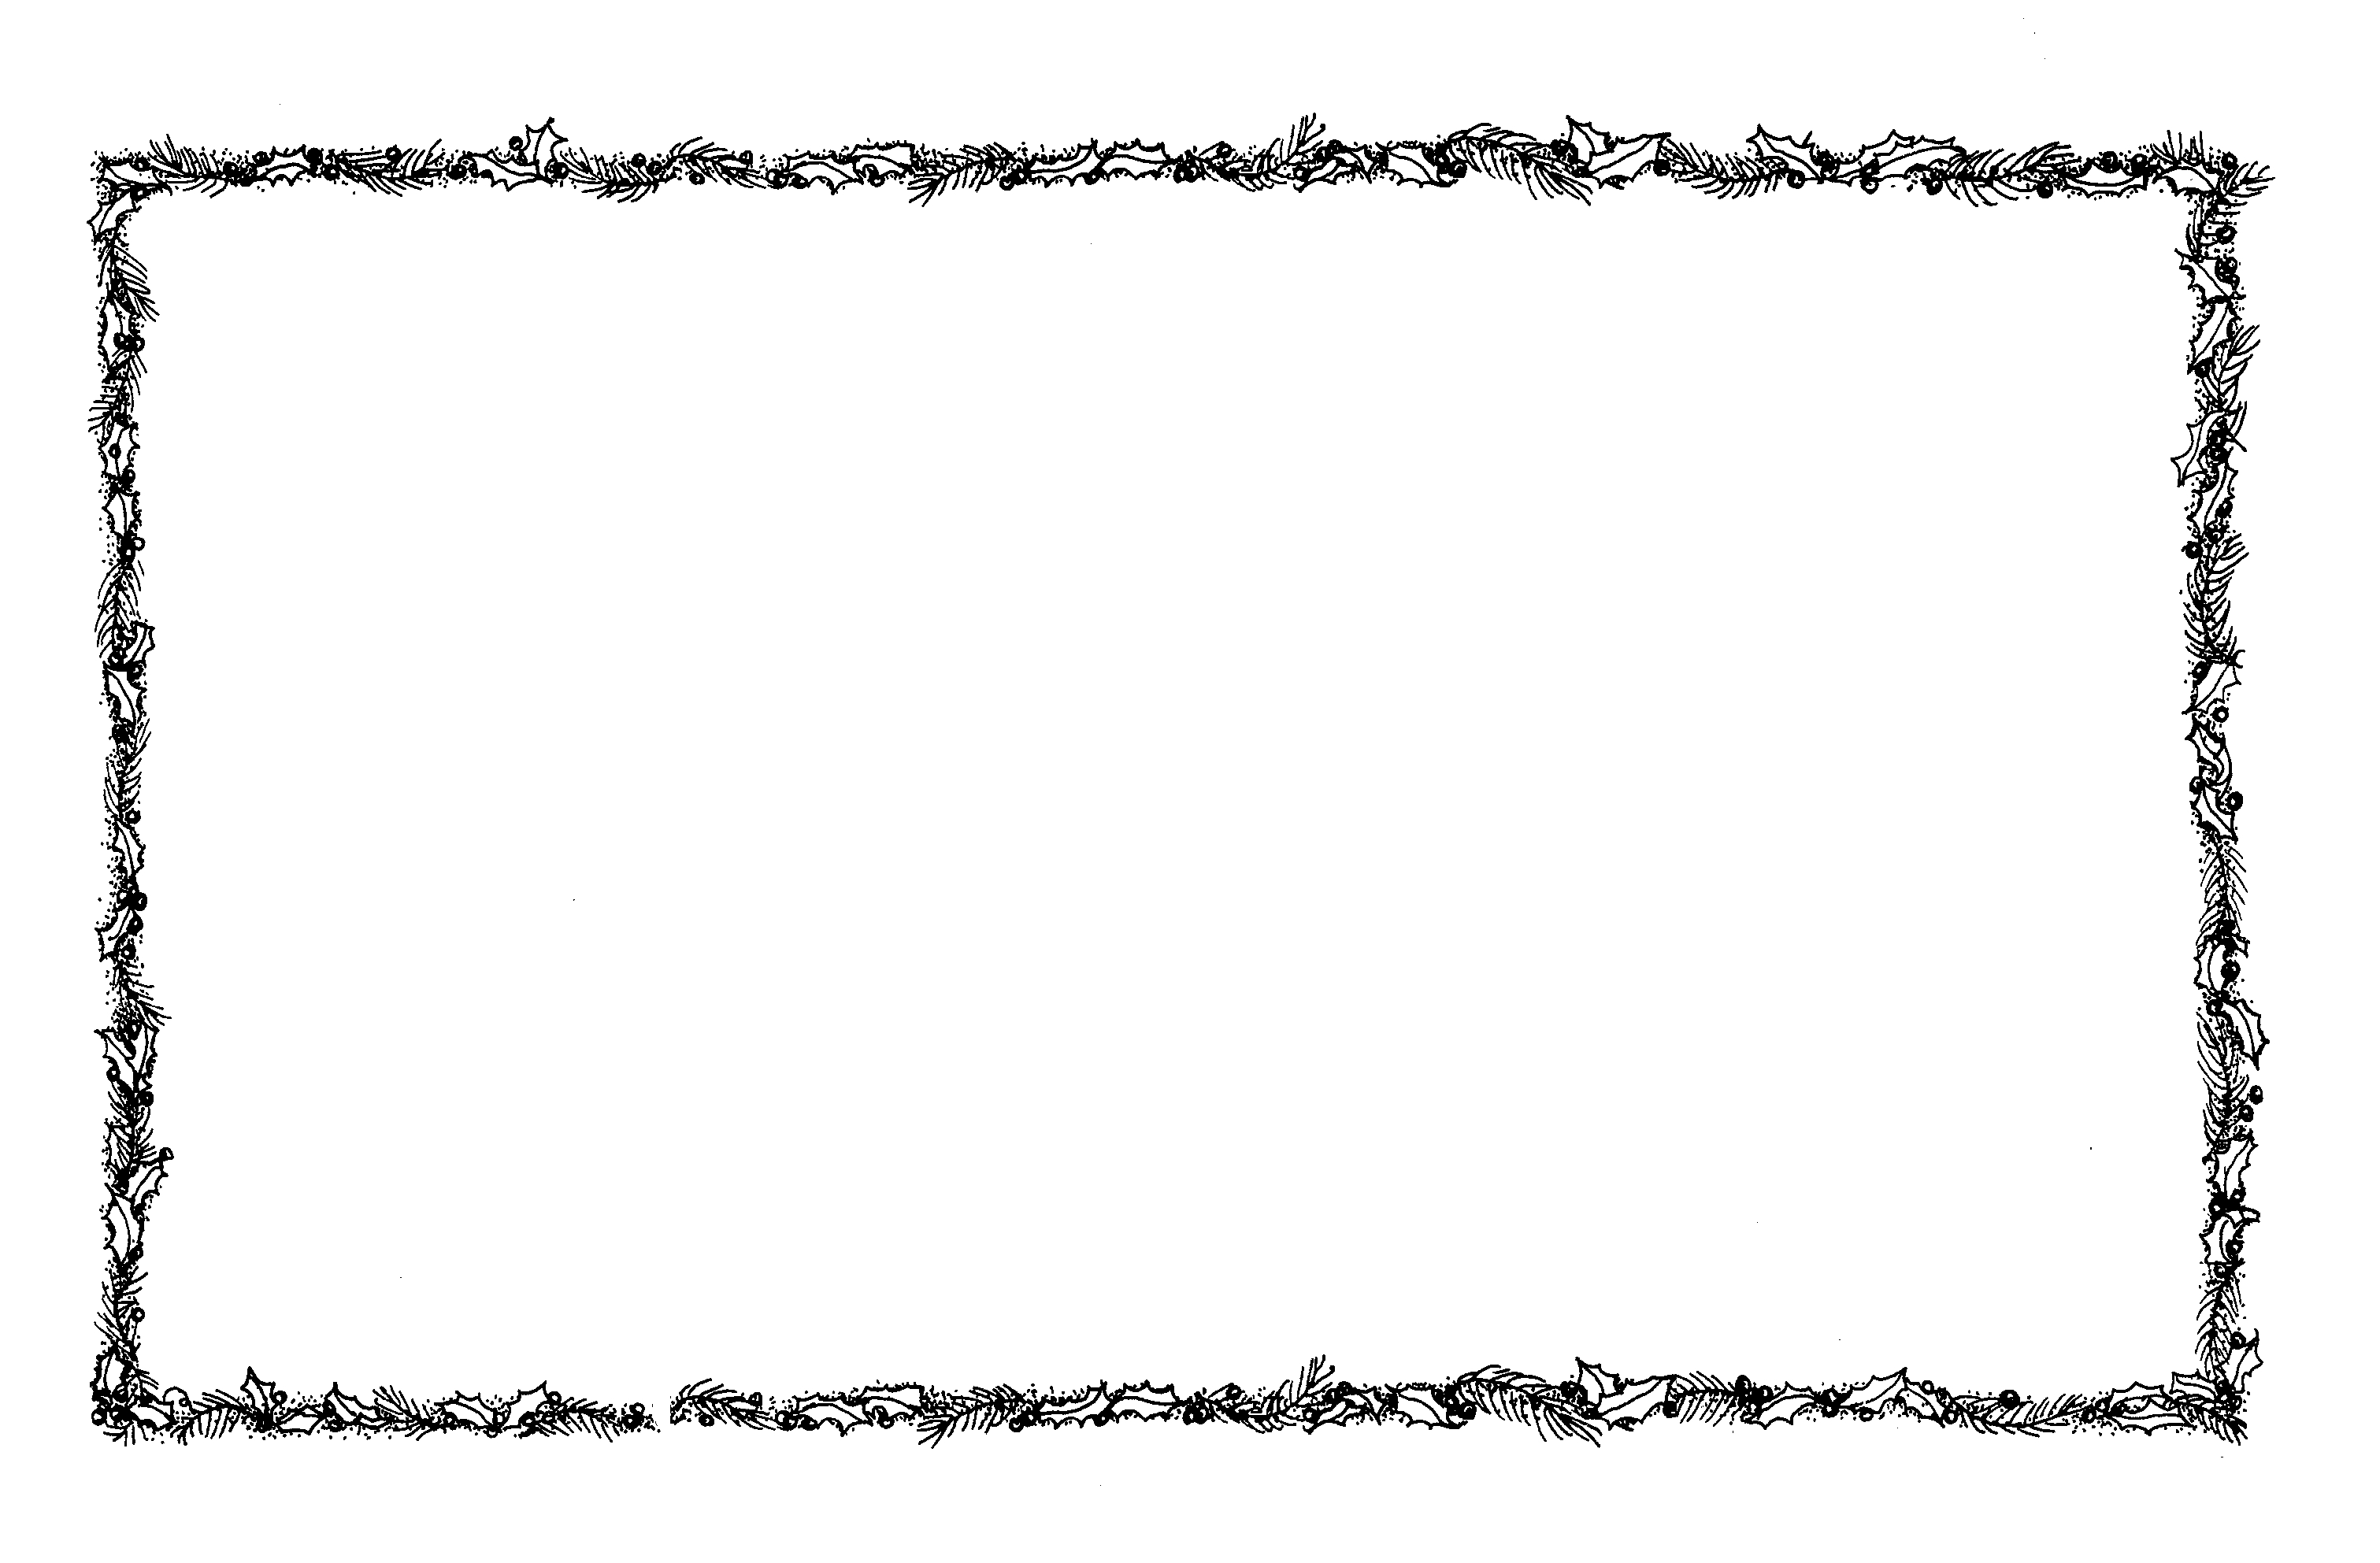 Barbed wire border clip art at clker vector clip art - Clipartix